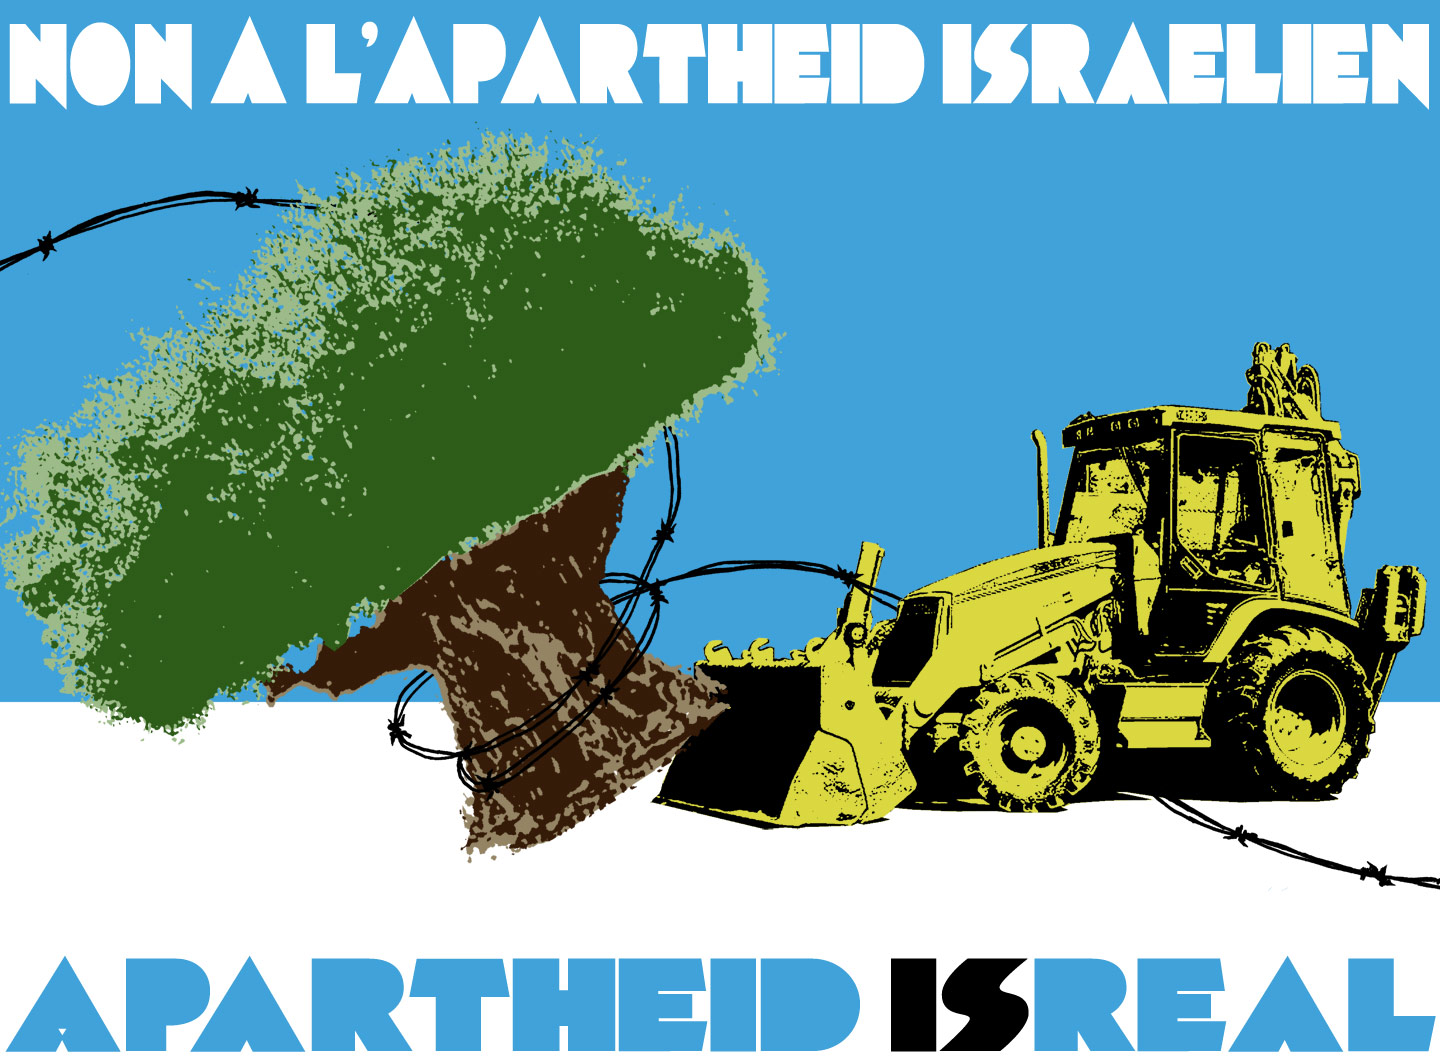 apartheid-isreal-01d-21.jpg